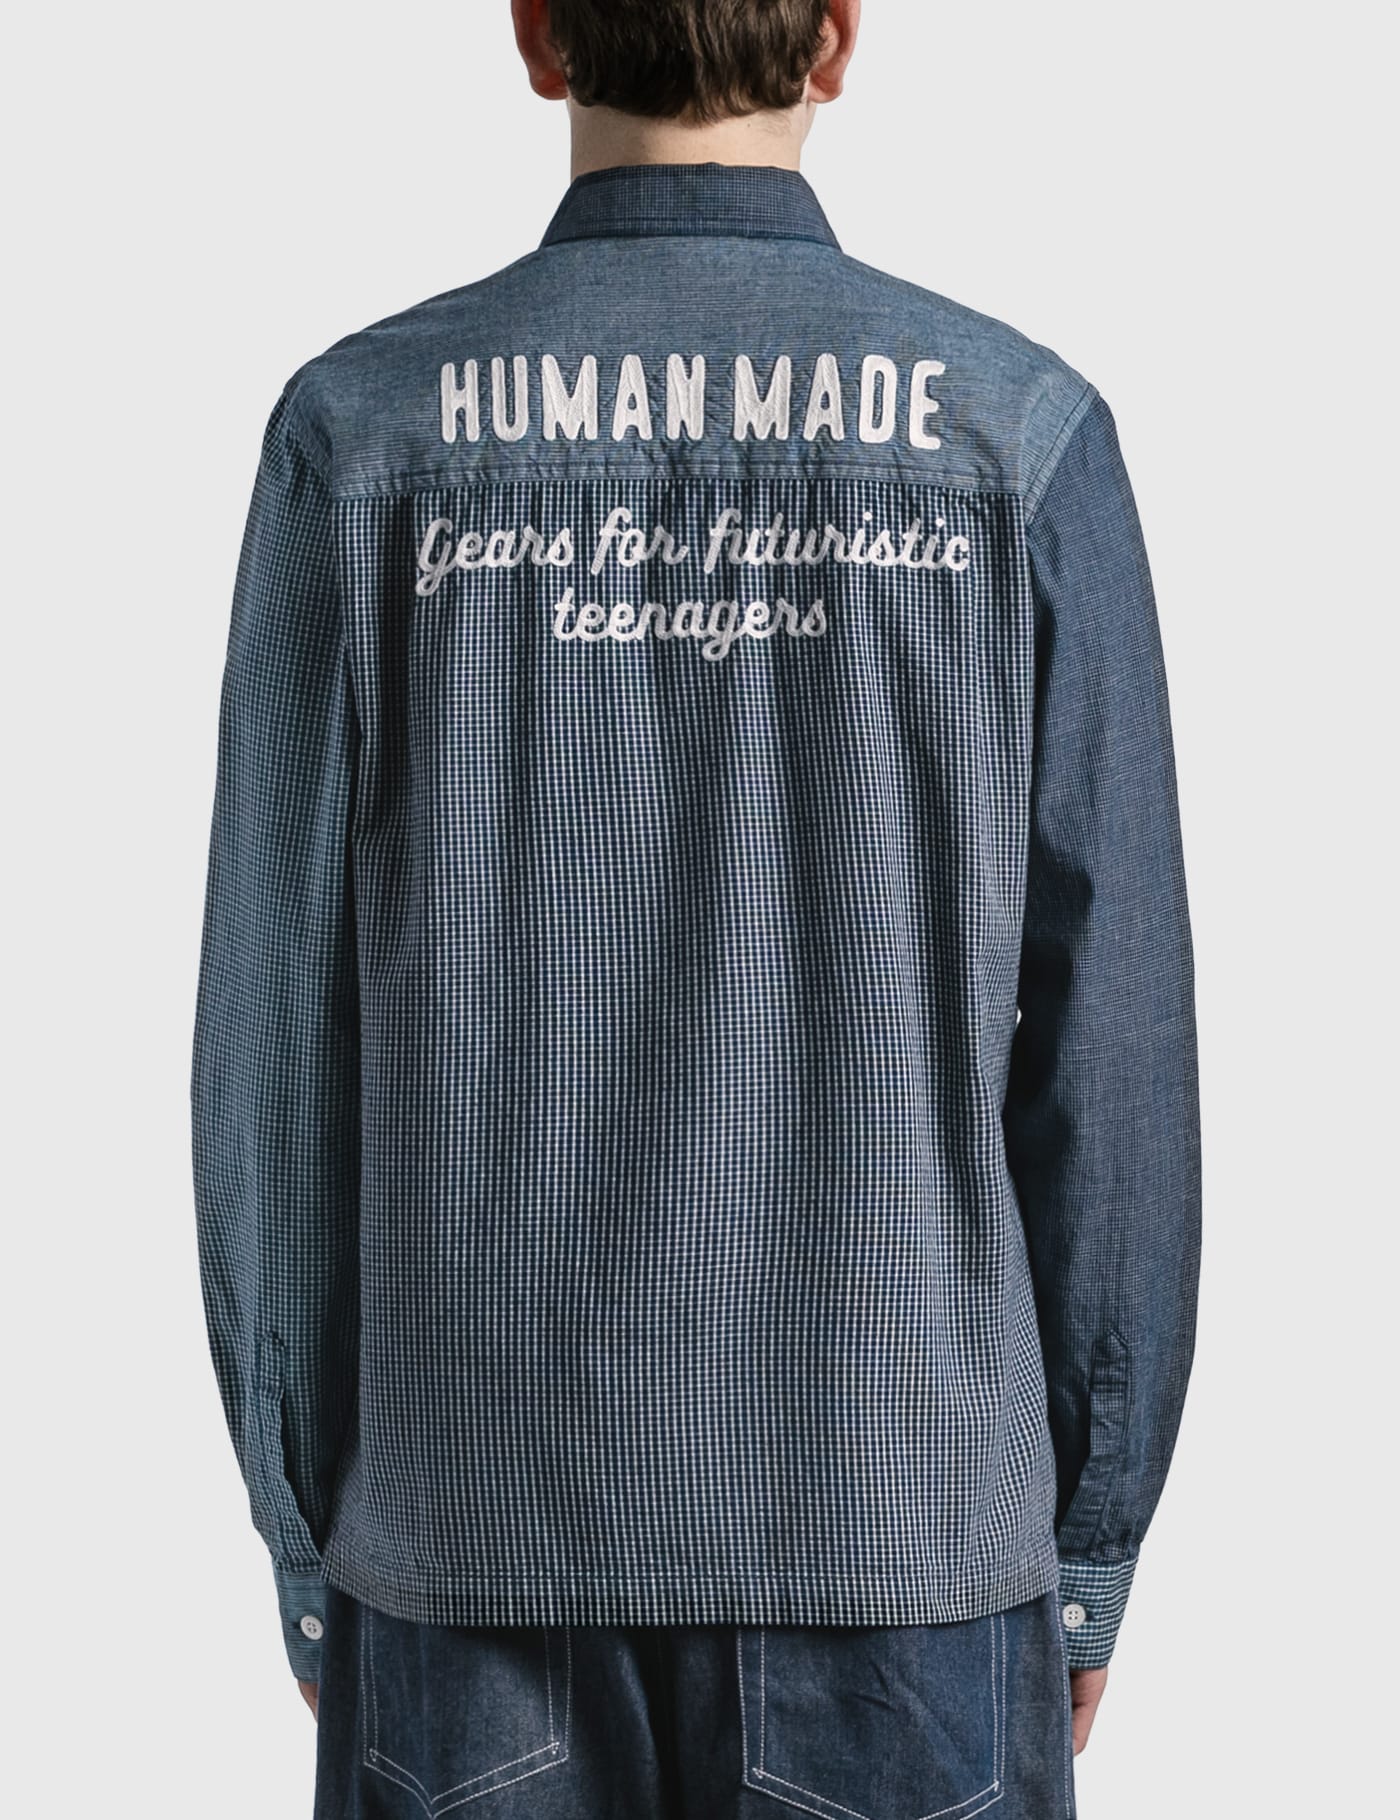 Human Made - クレイジー パターン シャツ | HBX -  ハイプビースト(Hypebeast)が厳選したグローバルファッション&ライフスタイル